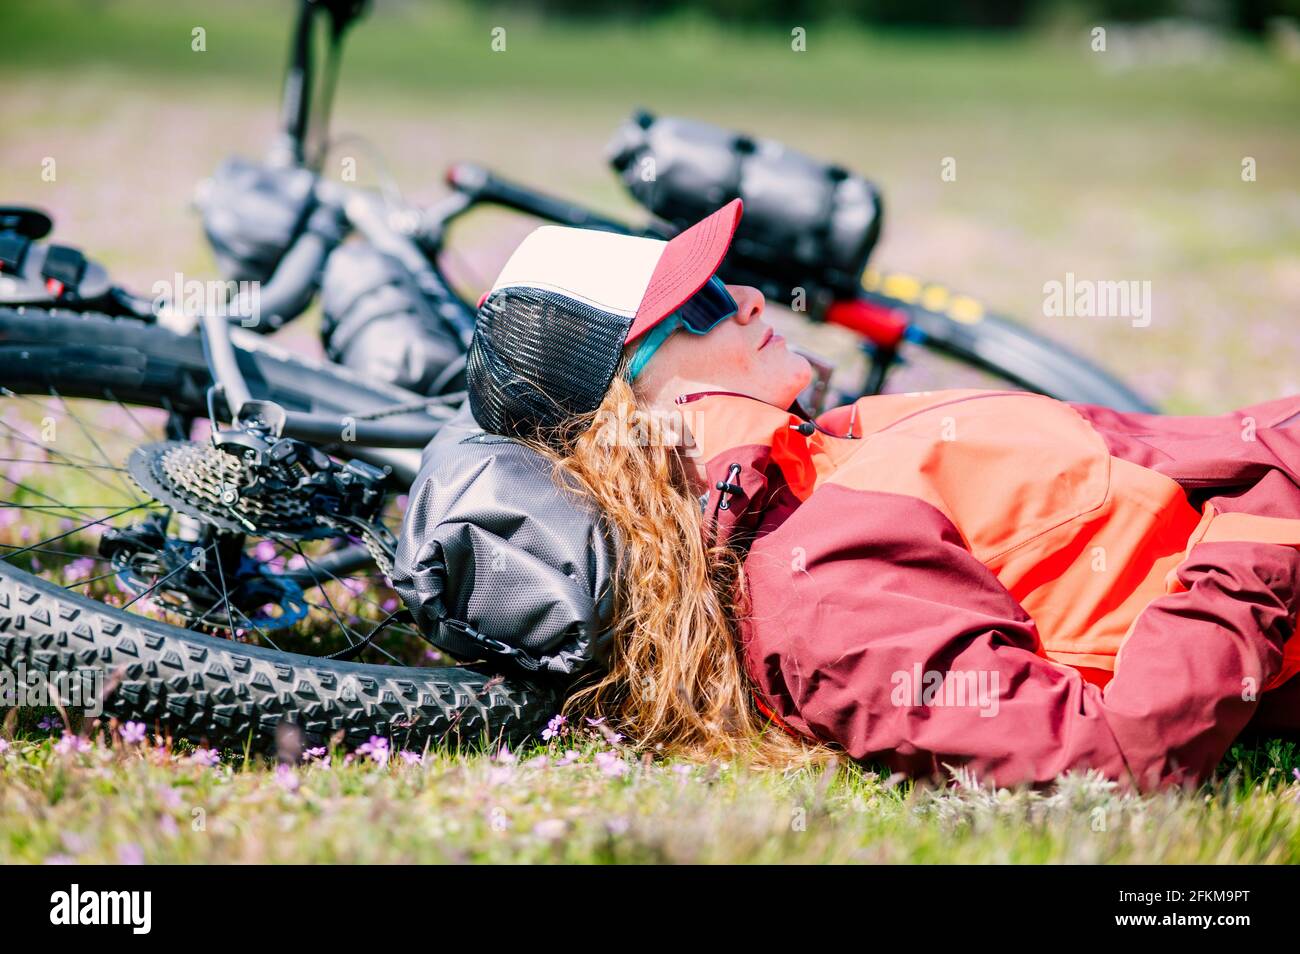 Eine Frau, die auf ihrem Mountainbike in einem Grün liegt Wiese im Frühling Stockfoto